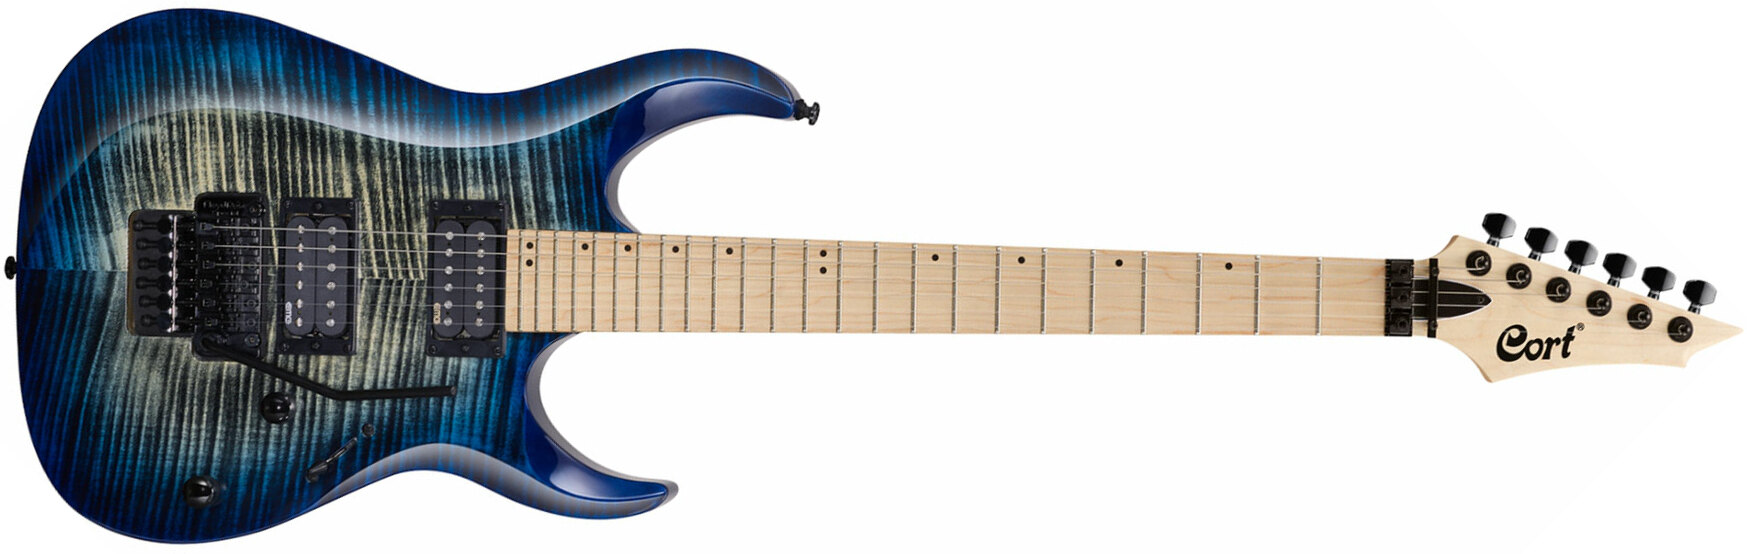 Cort X300 Fr Hh Mn - Blue Burst - Guitarra eléctrica con forma de str. - Main picture